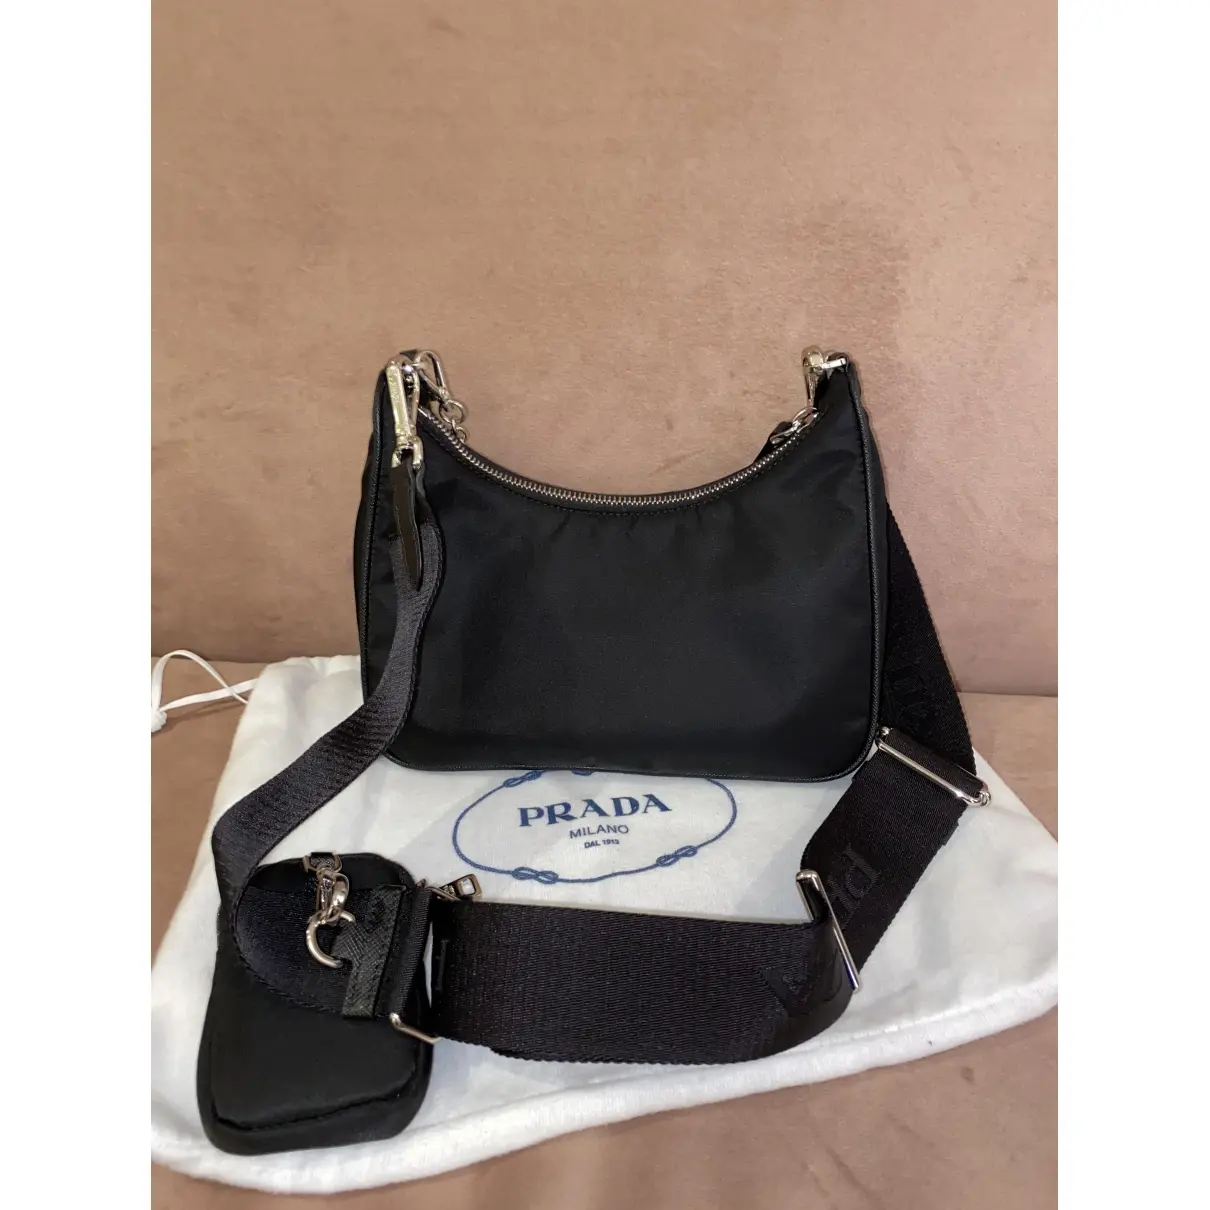 Prada Re-edition handbag for sale